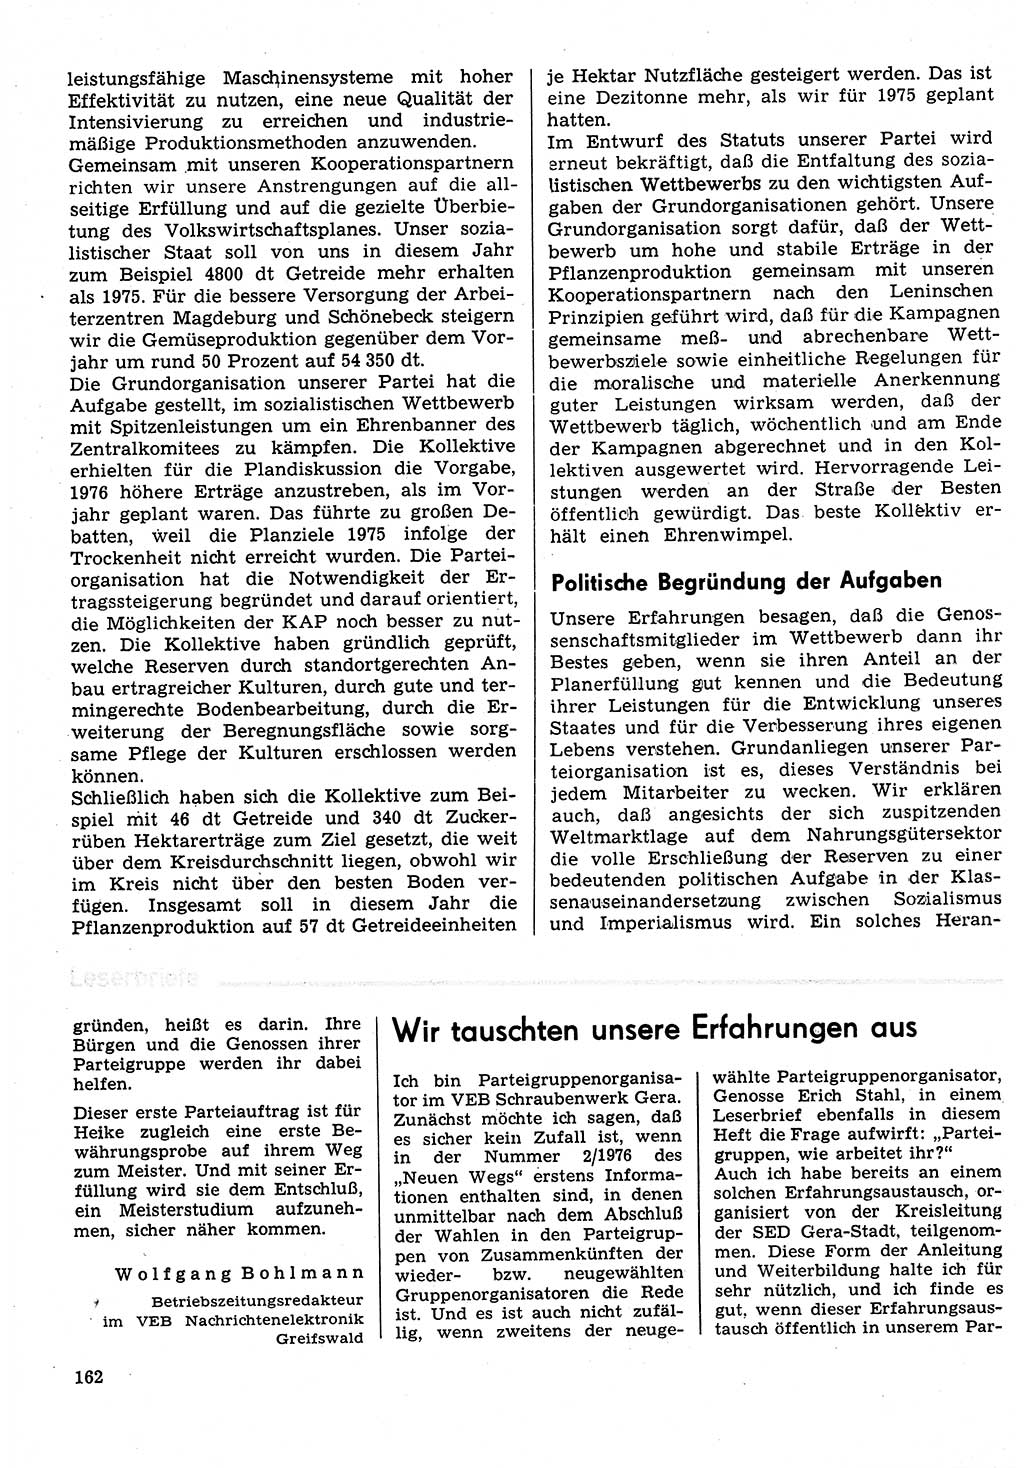 Neuer Weg (NW), Organ des Zentralkomitees (ZK) der SED (Sozialistische Einheitspartei Deutschlands) für Fragen des Parteilebens, 31. Jahrgang [Deutsche Demokratische Republik (DDR)] 1976, Seite 162 (NW ZK SED DDR 1976, S. 162)